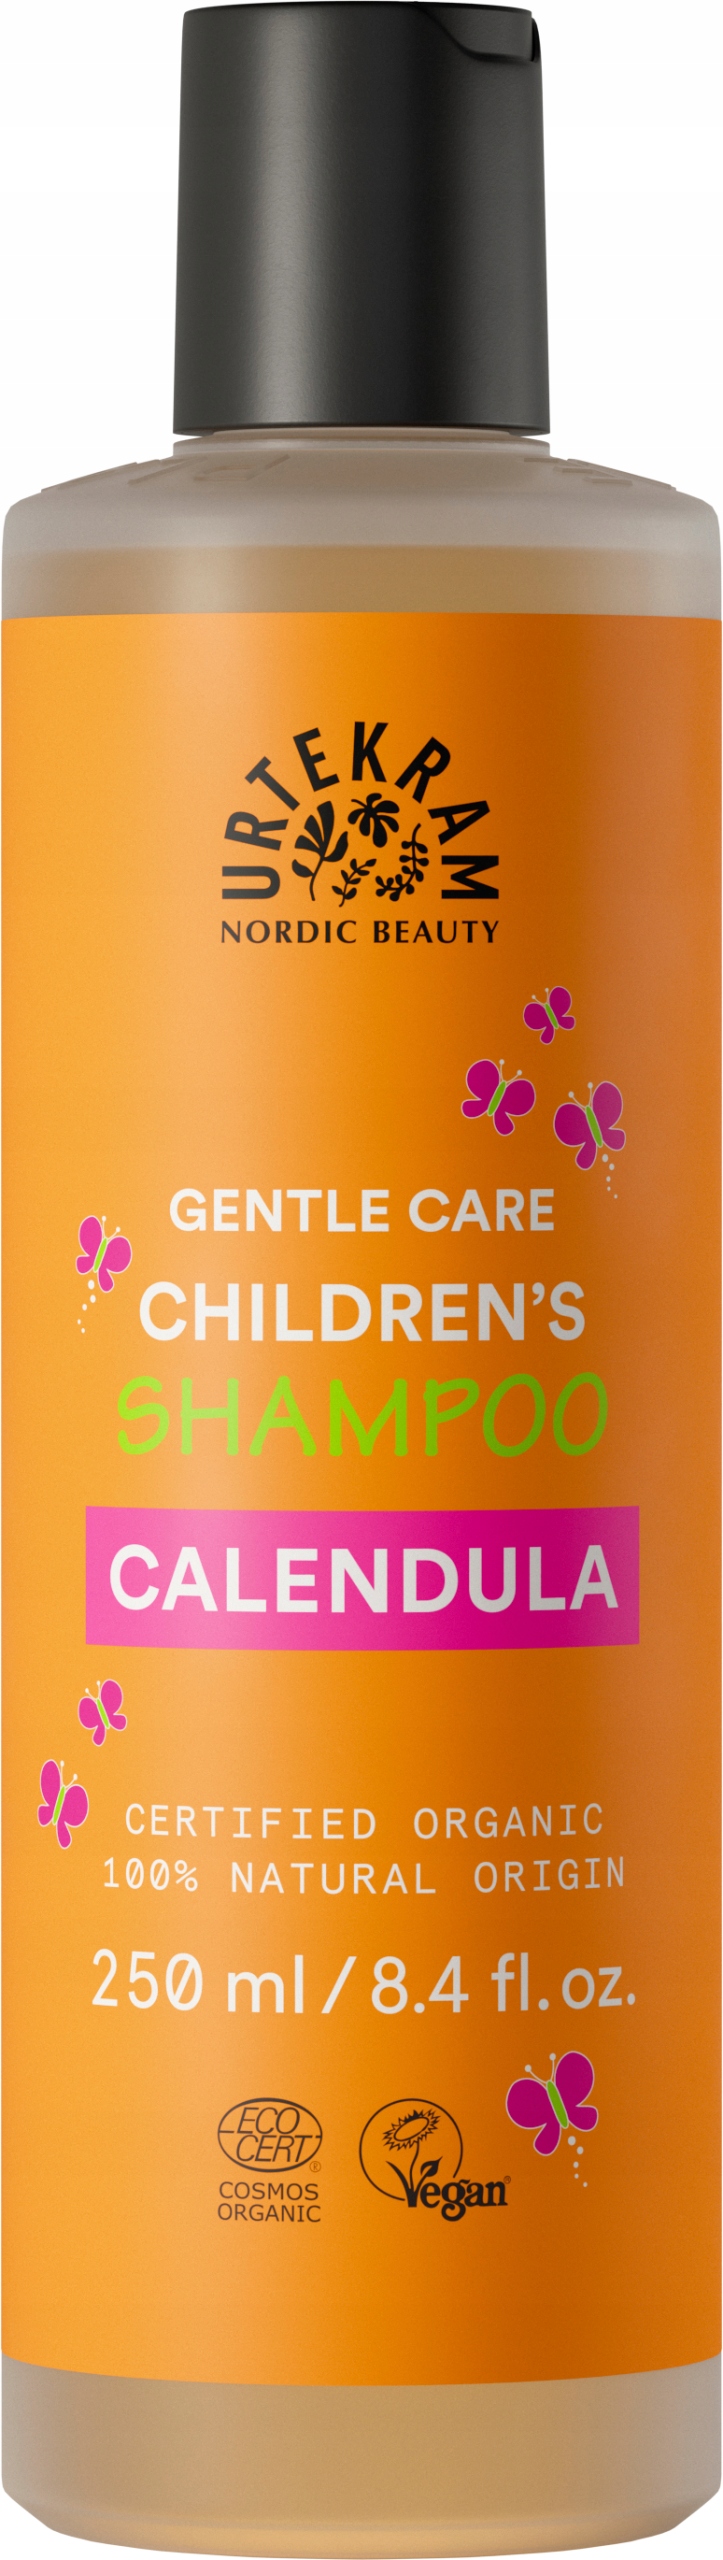 szampon do włosów dla dzieci bez sls